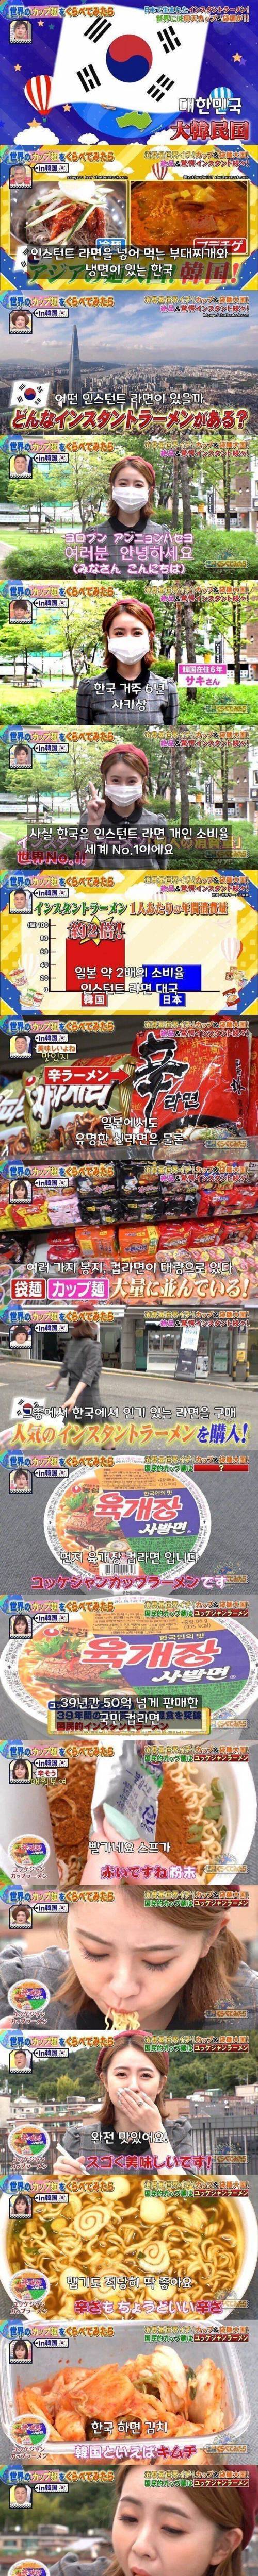 일본의 한국 인스턴트 라면 소개 방송